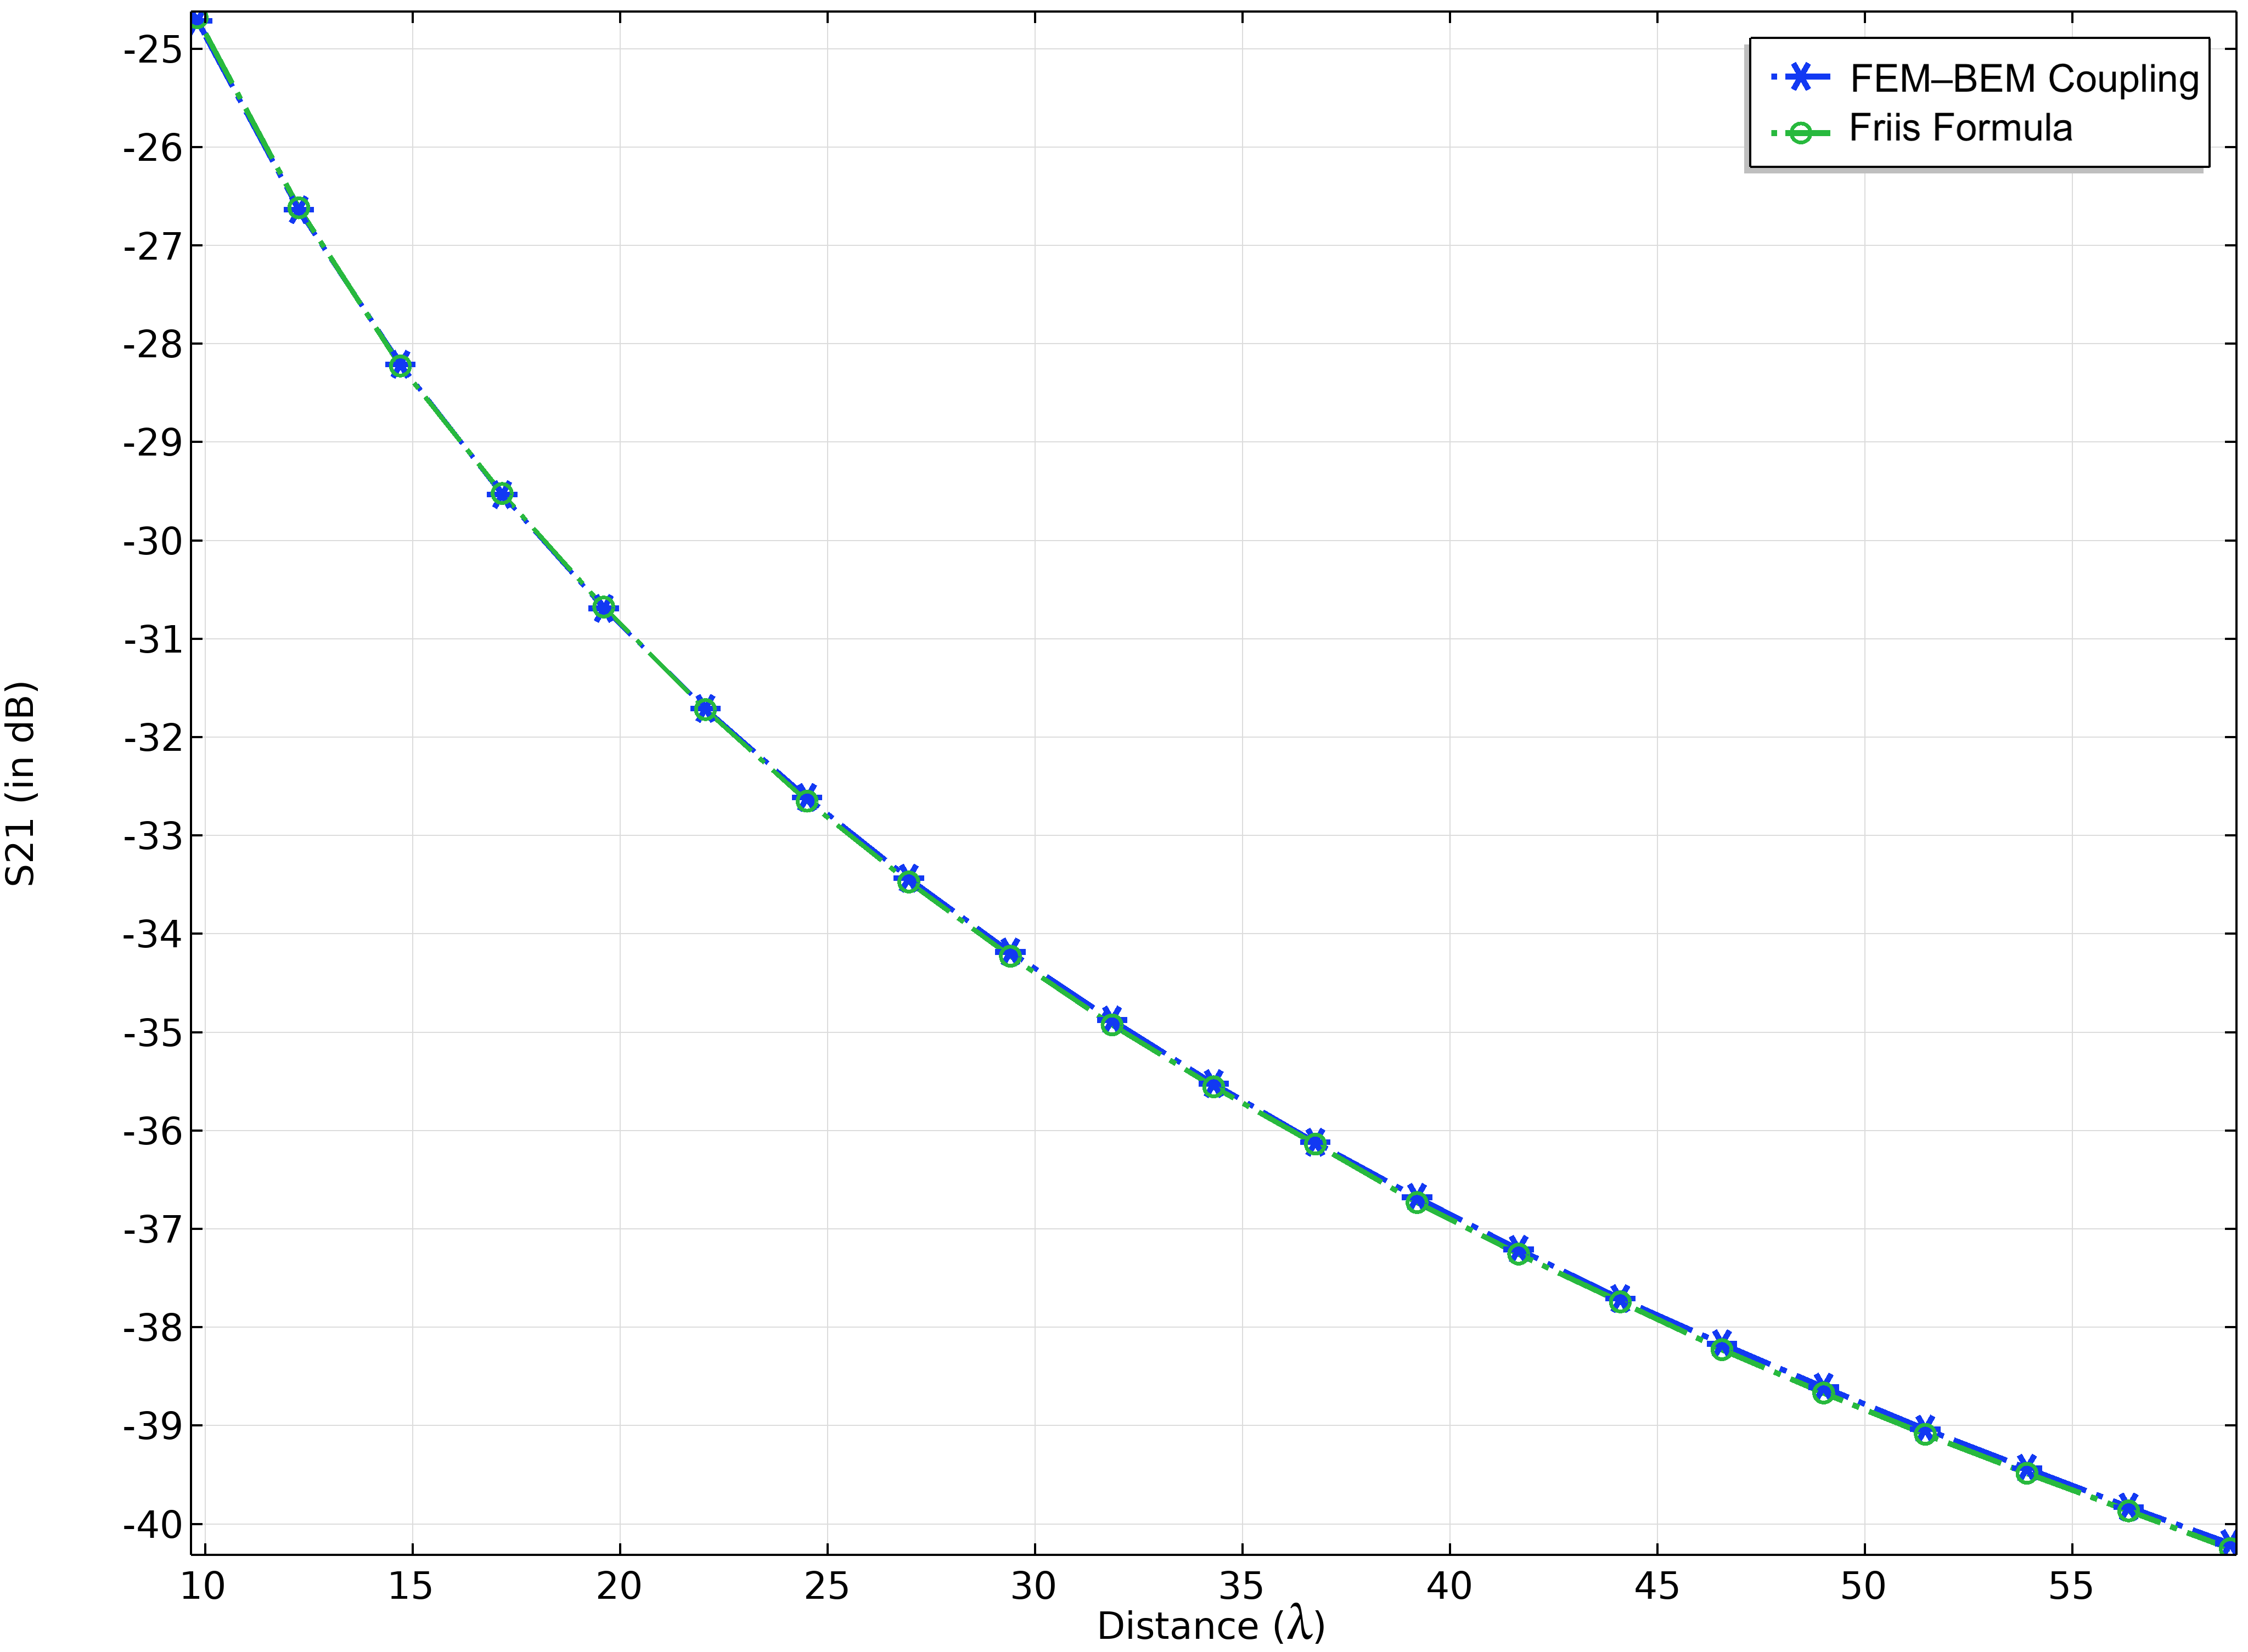 一维图，X 轴为距离（lambda），Y 轴为 S21（单位dB）。关键点显示，带星号的蓝线和带开放圈的绿线分别代表 FEM-BEM 耦合和 Friis 公式。